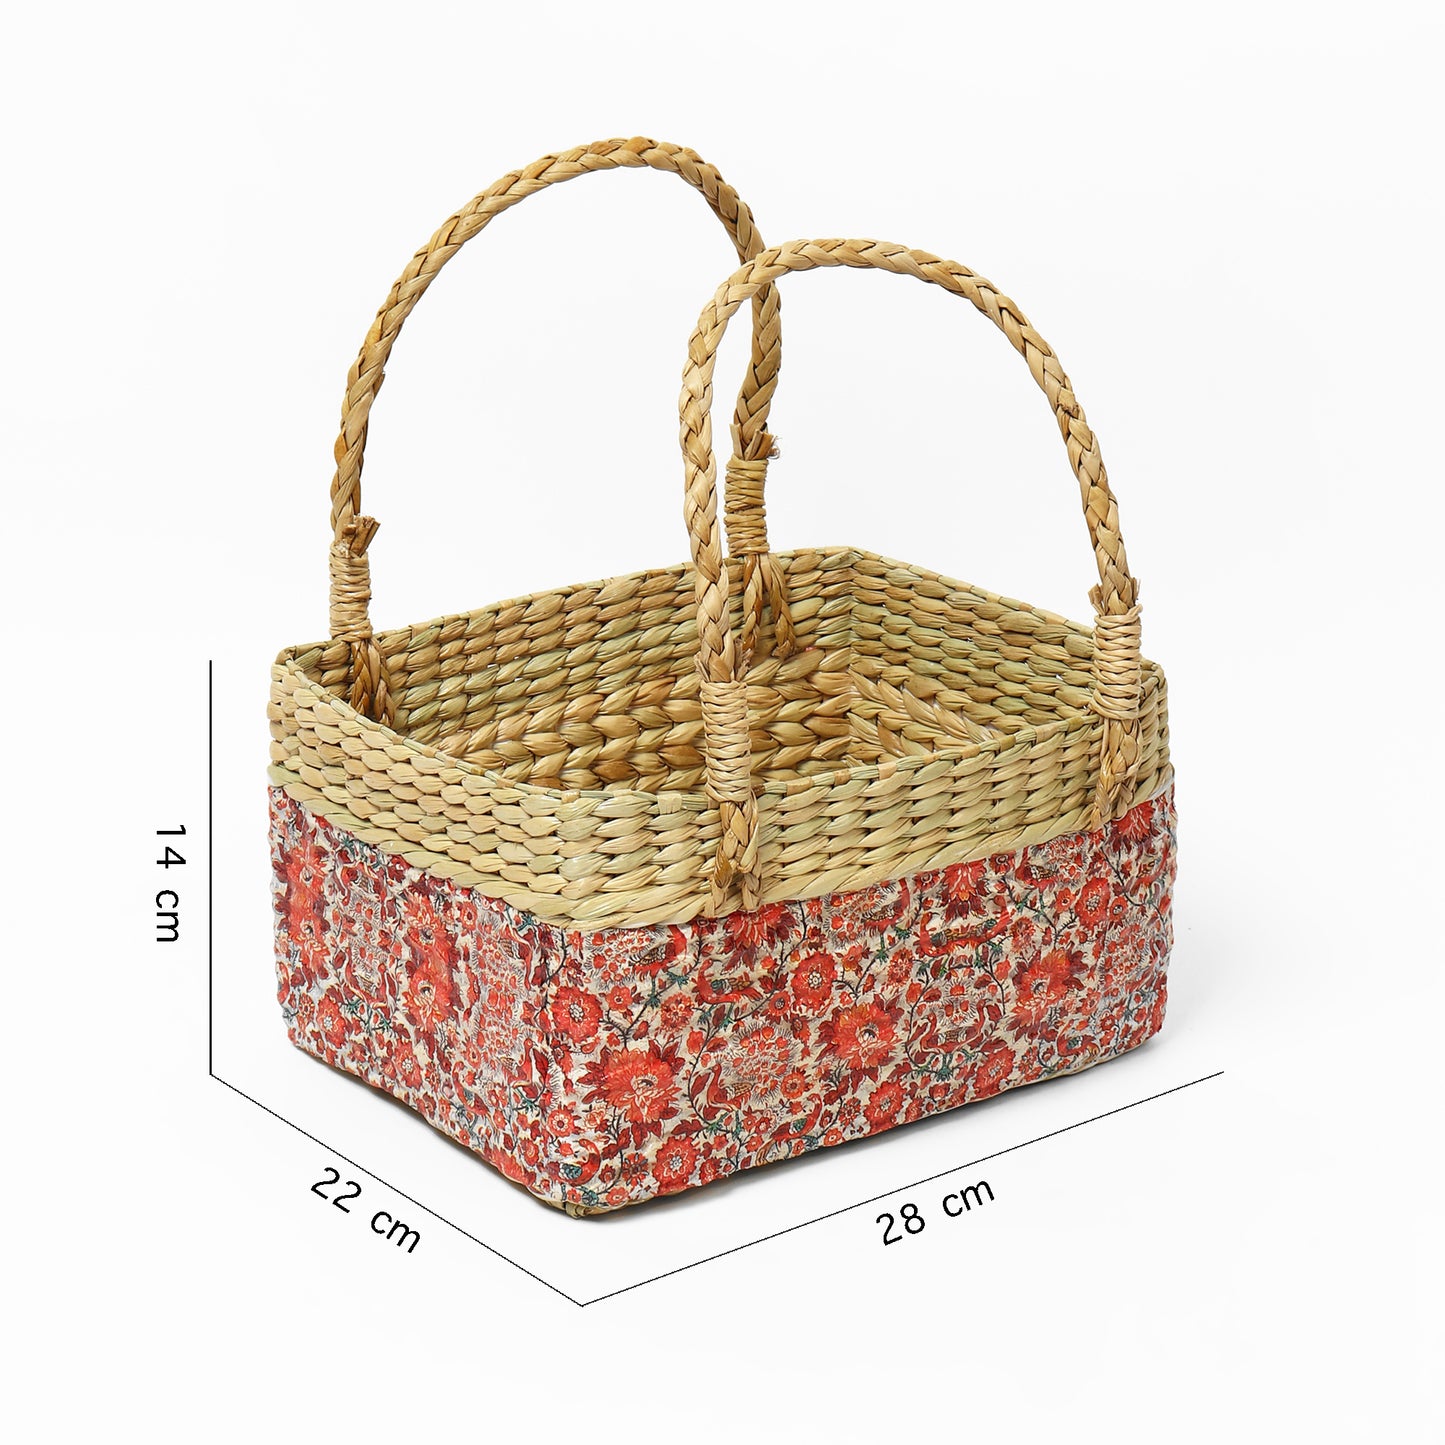  Gifting basket